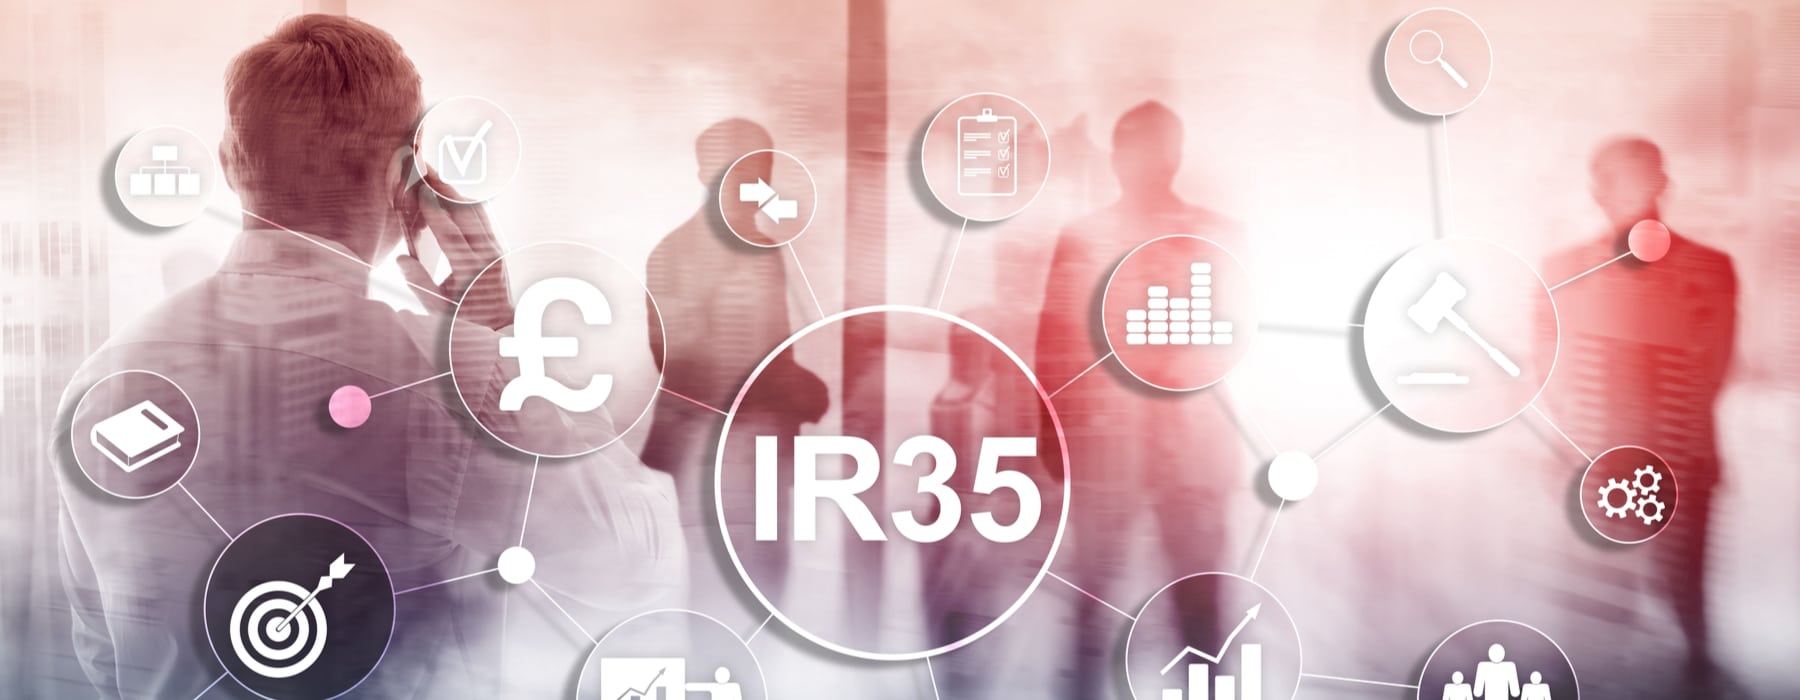 IR35 rule changes